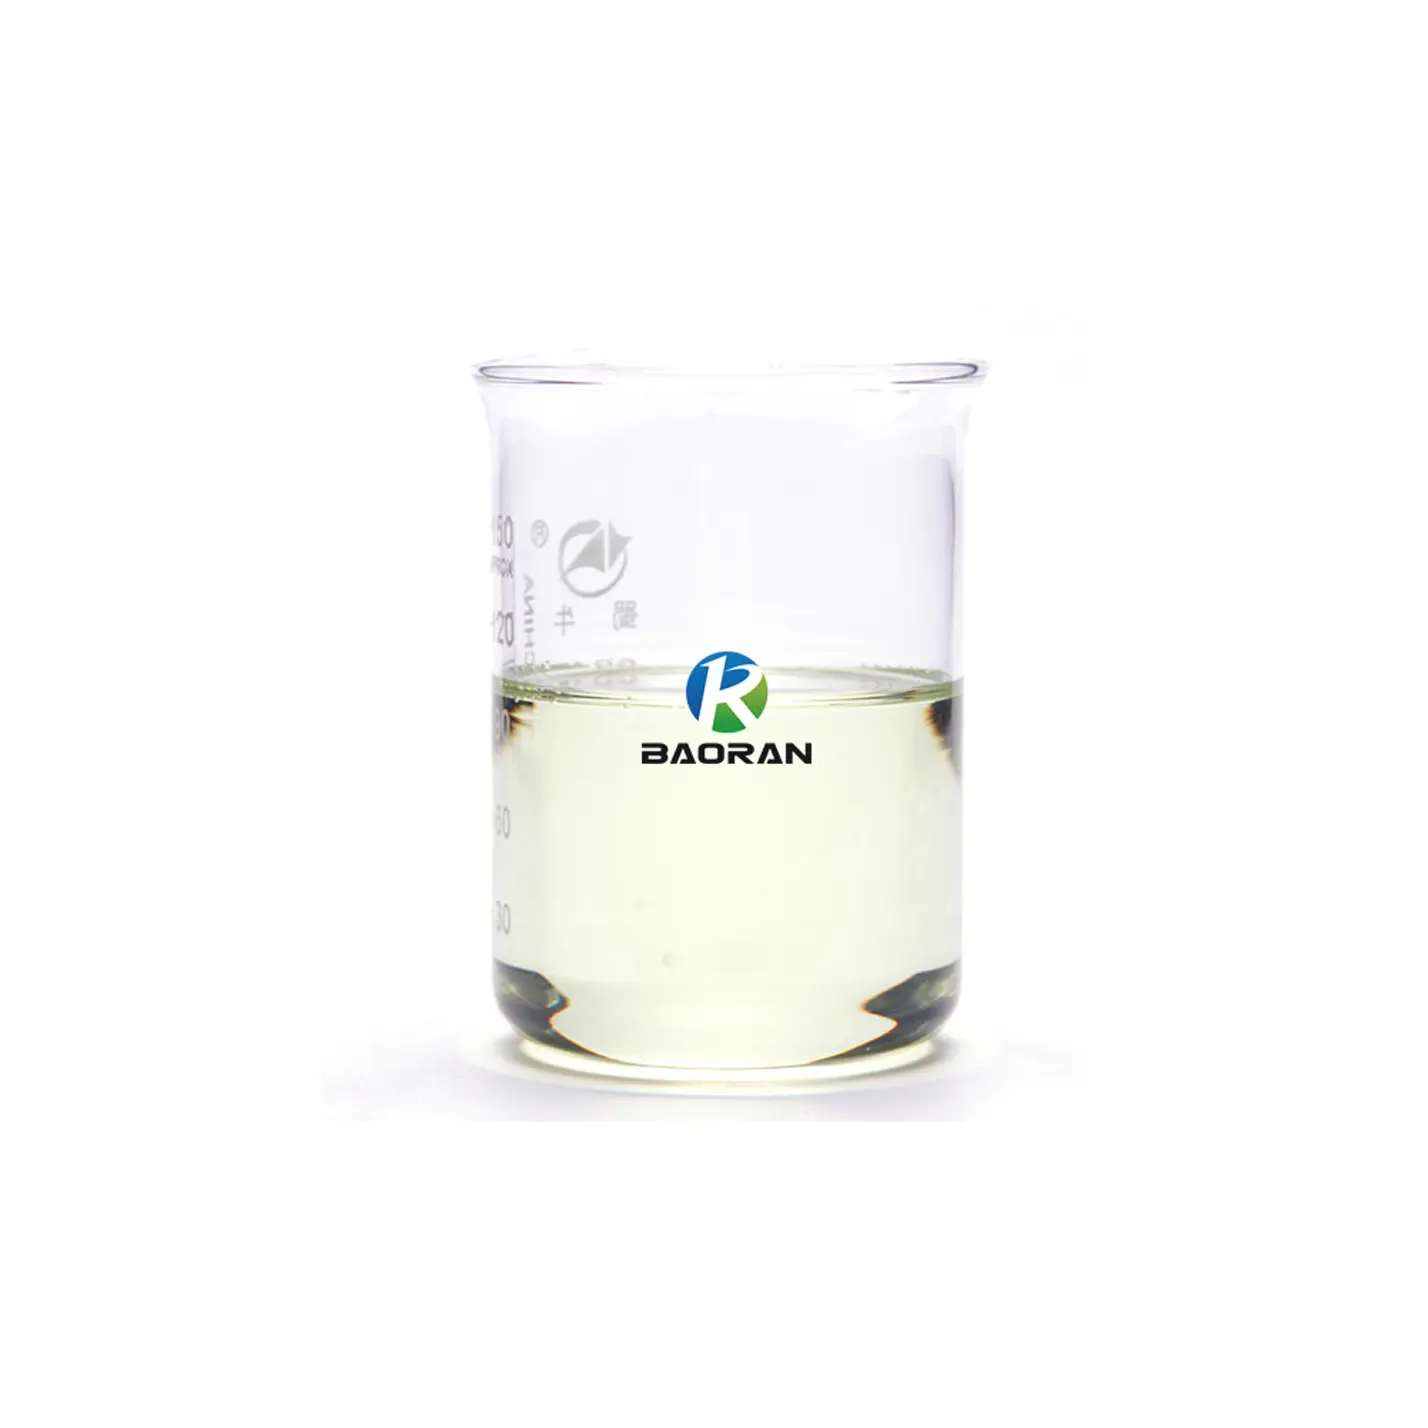 Ácido oleico de alta calidad CAS 112-80-1 para jabones, lubricantes, agentes de flotación, ungüentos y oleatos